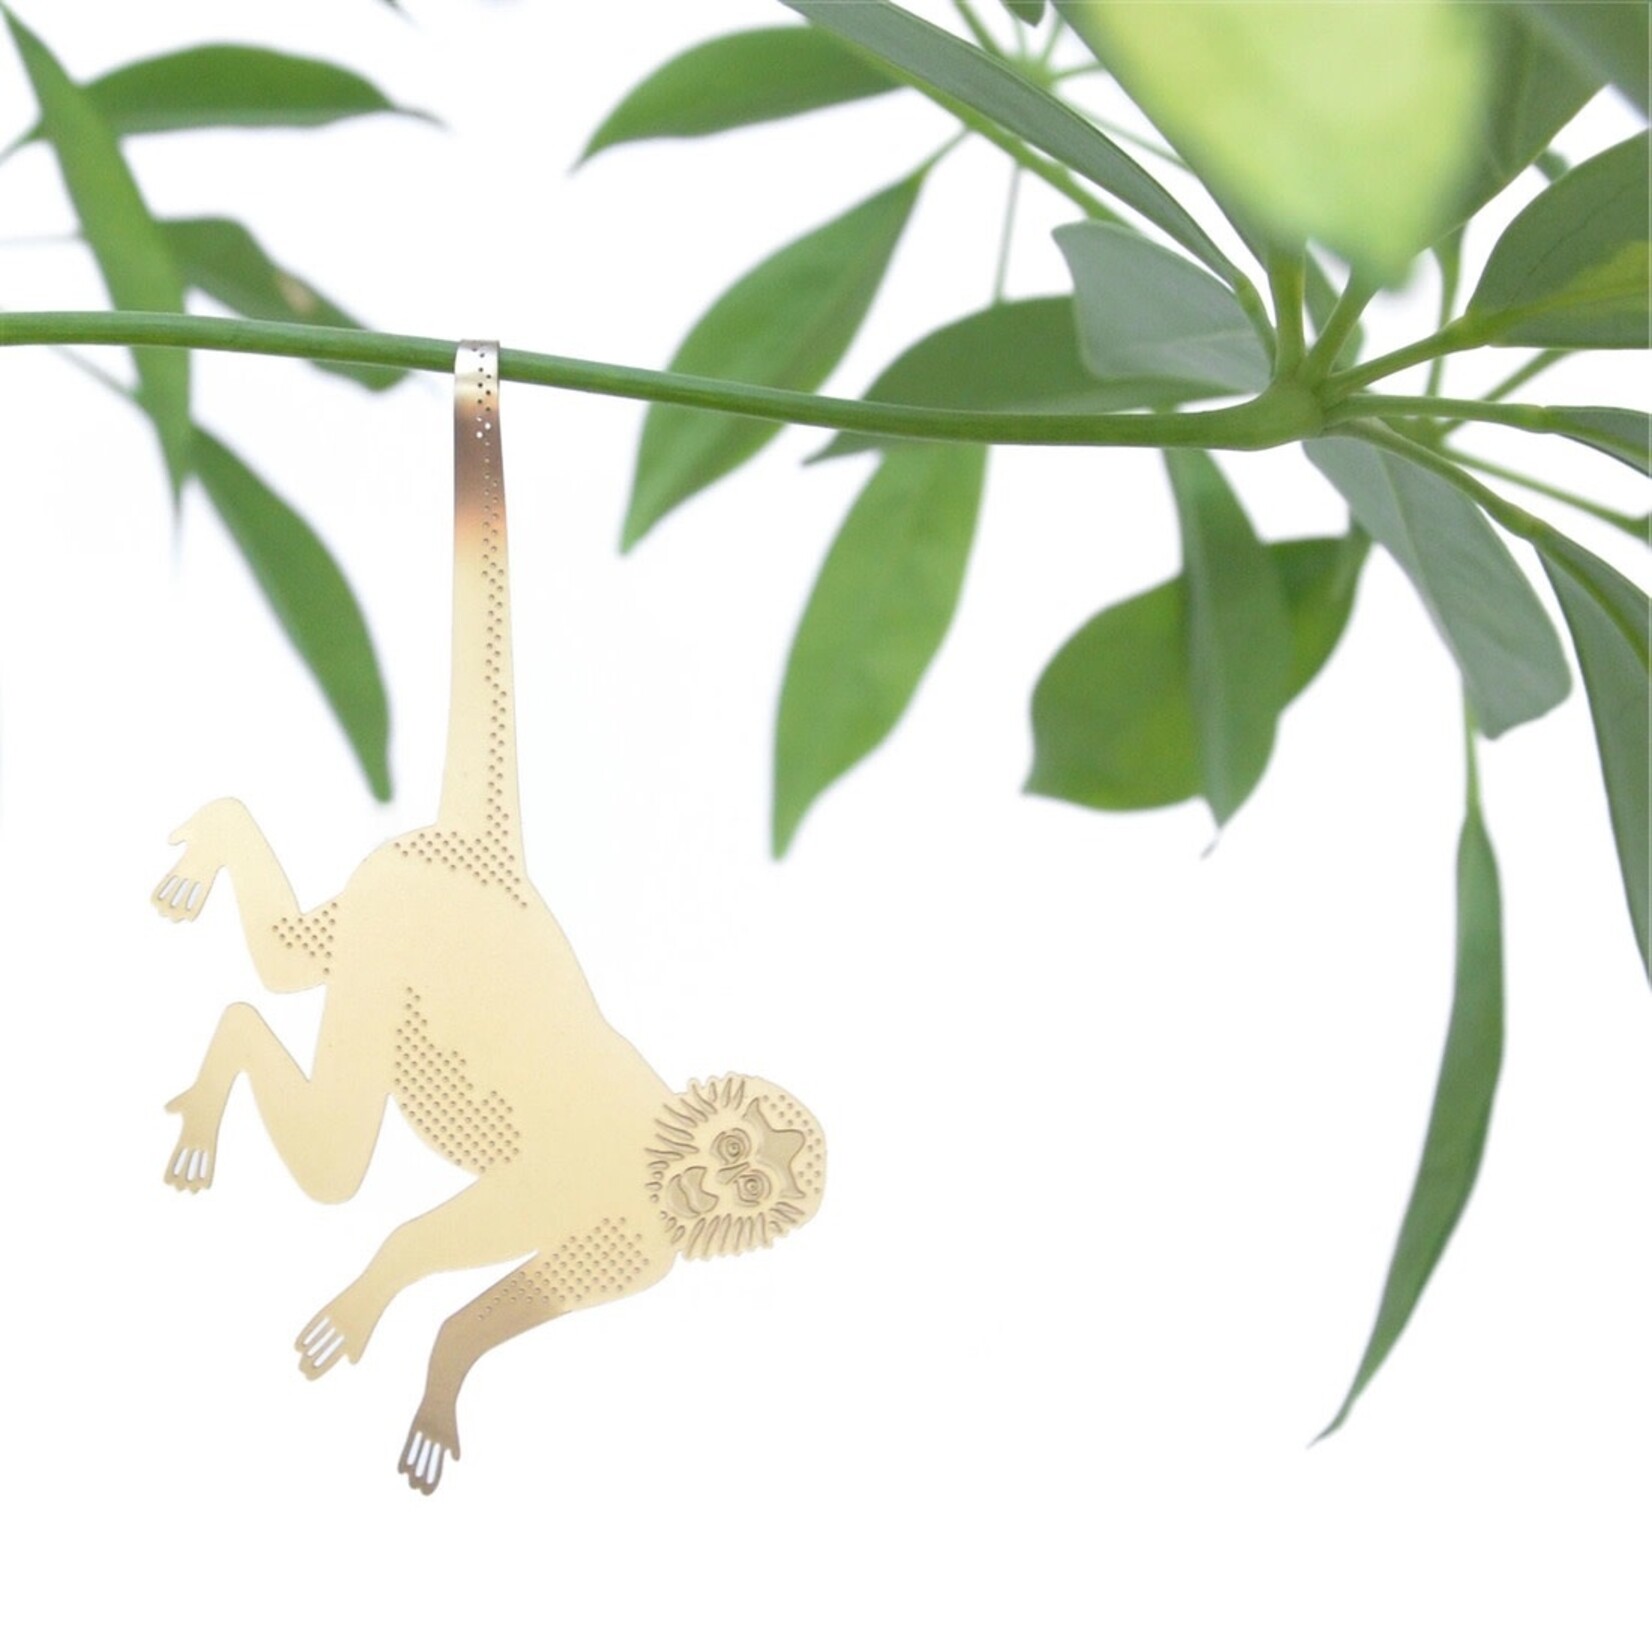 Plant Animal Spider Monkey